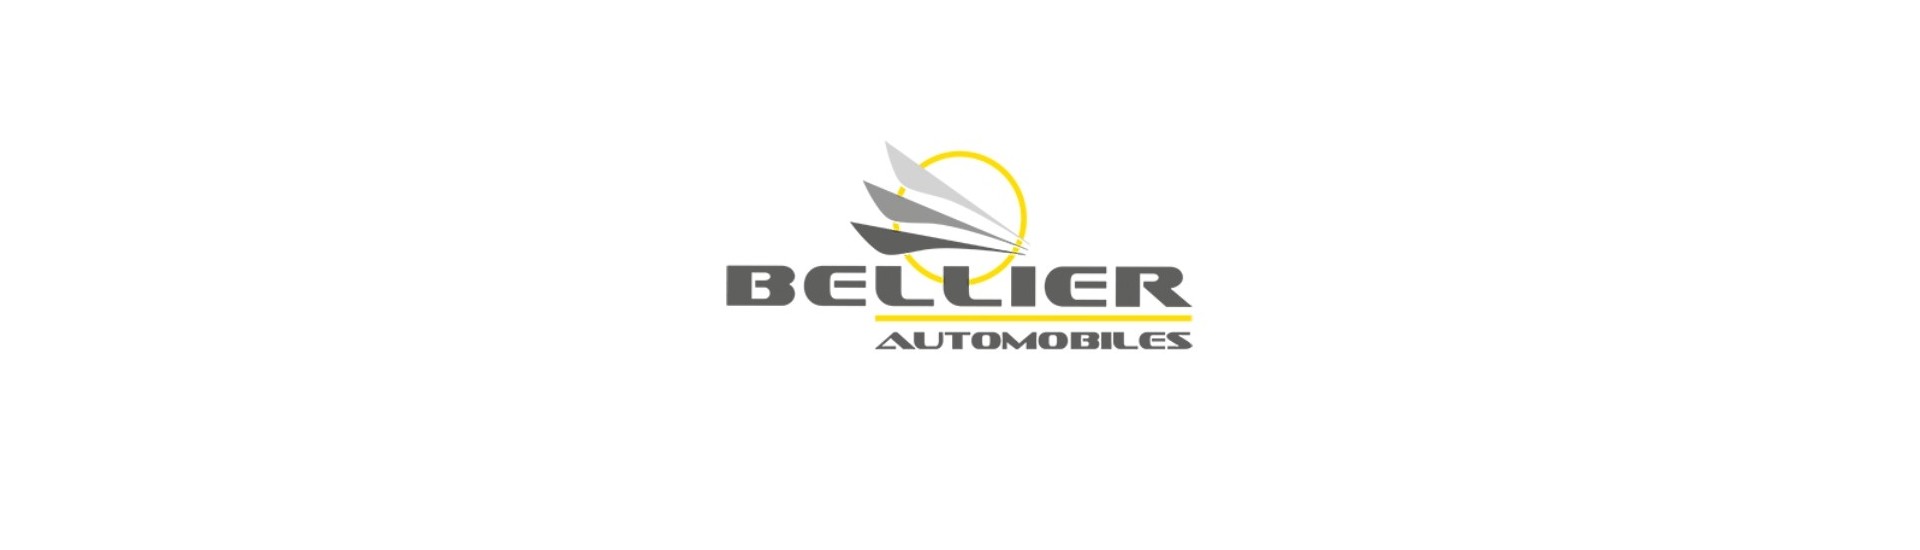 Inredningsdörr hanterar bästa bilpris utan licens Bellier